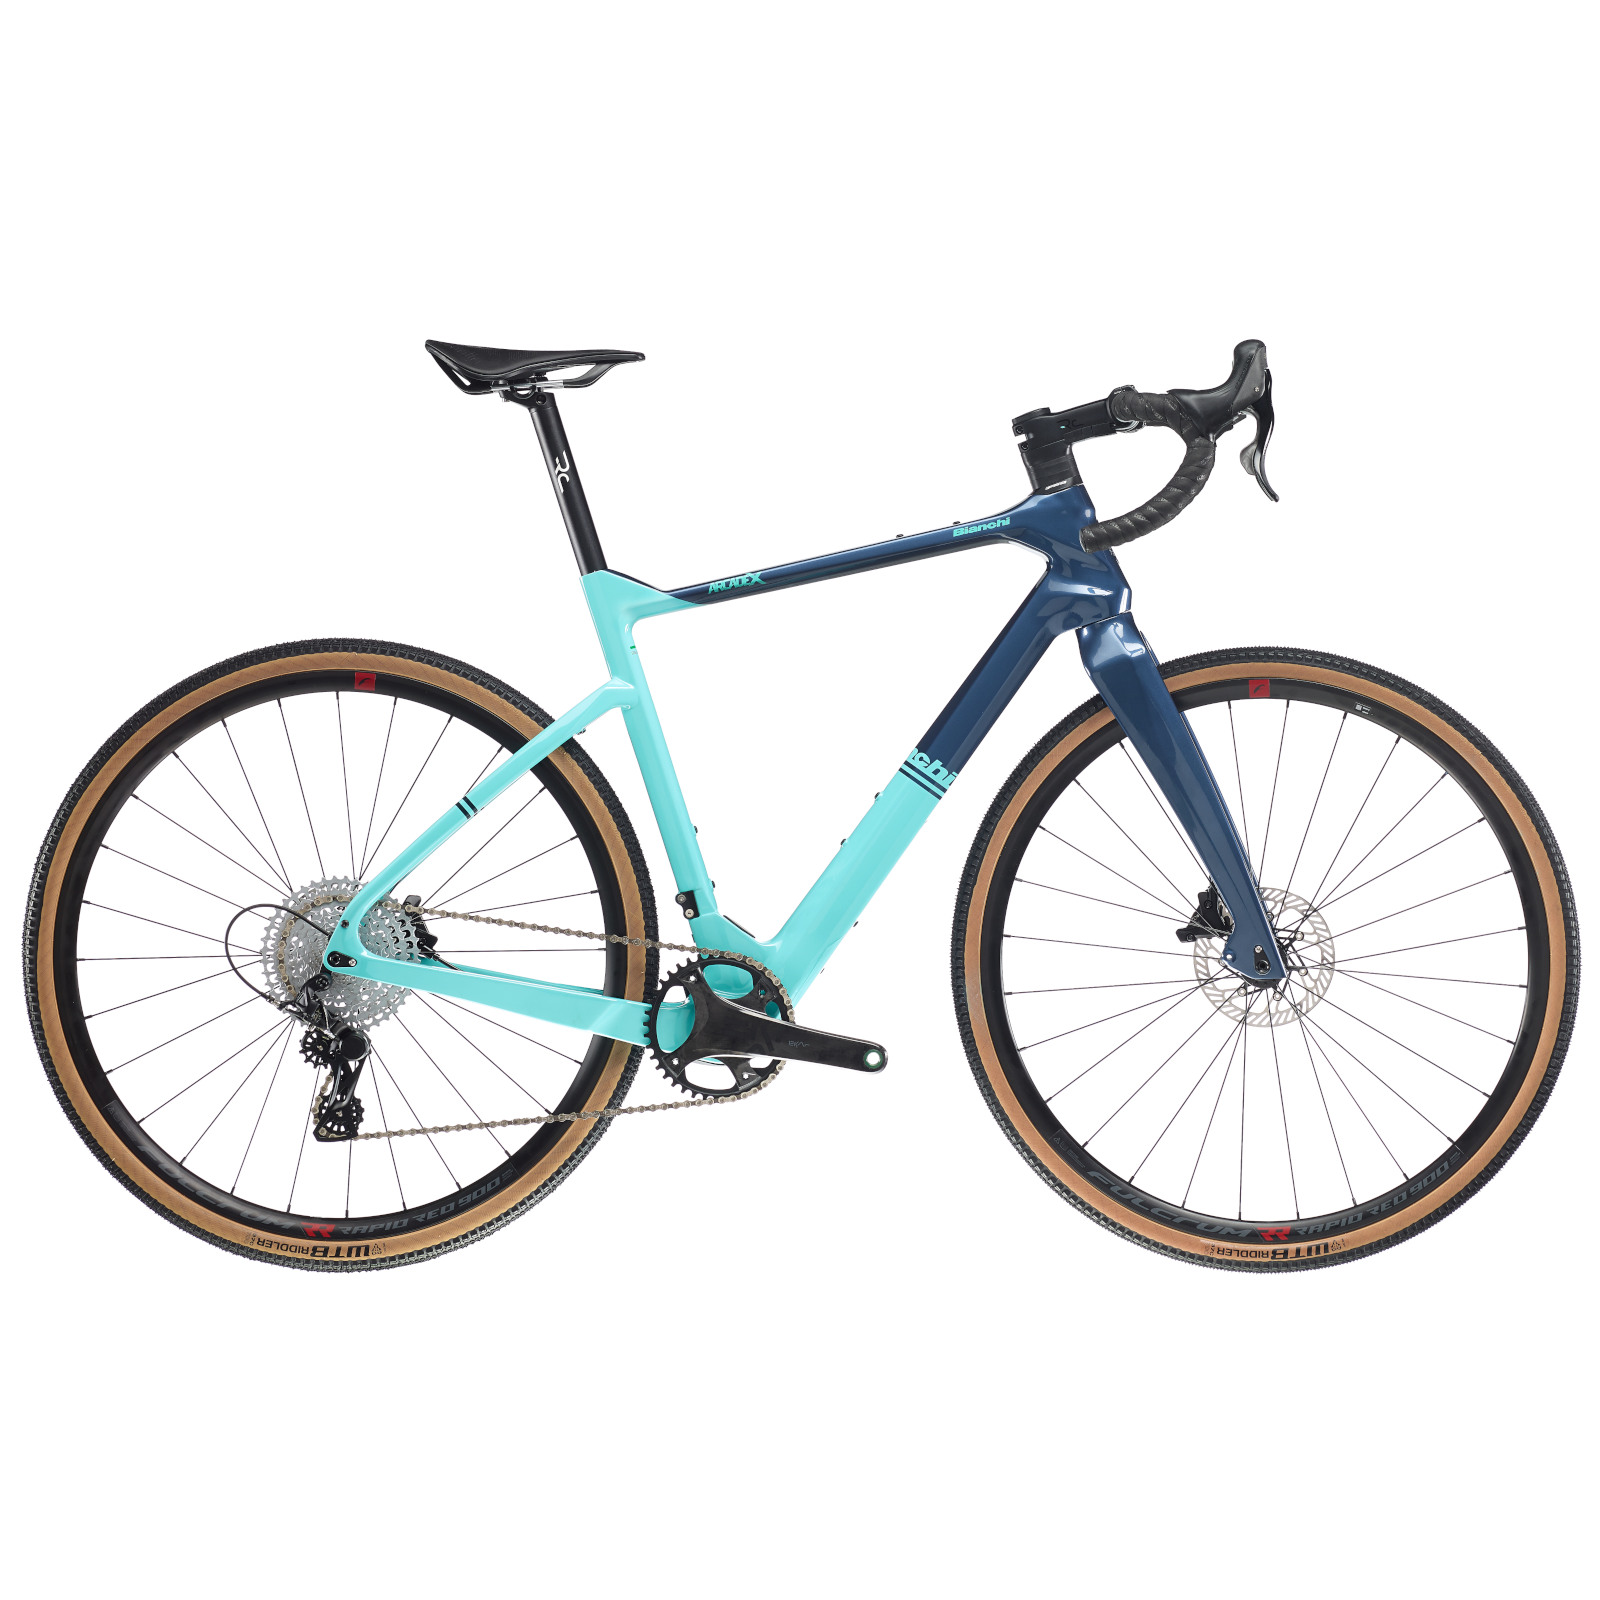 Produktbild von Bianchi ARCADEX Disc - Ekar - Carbon Gravel Bike - 2023 - CK16 / blue note